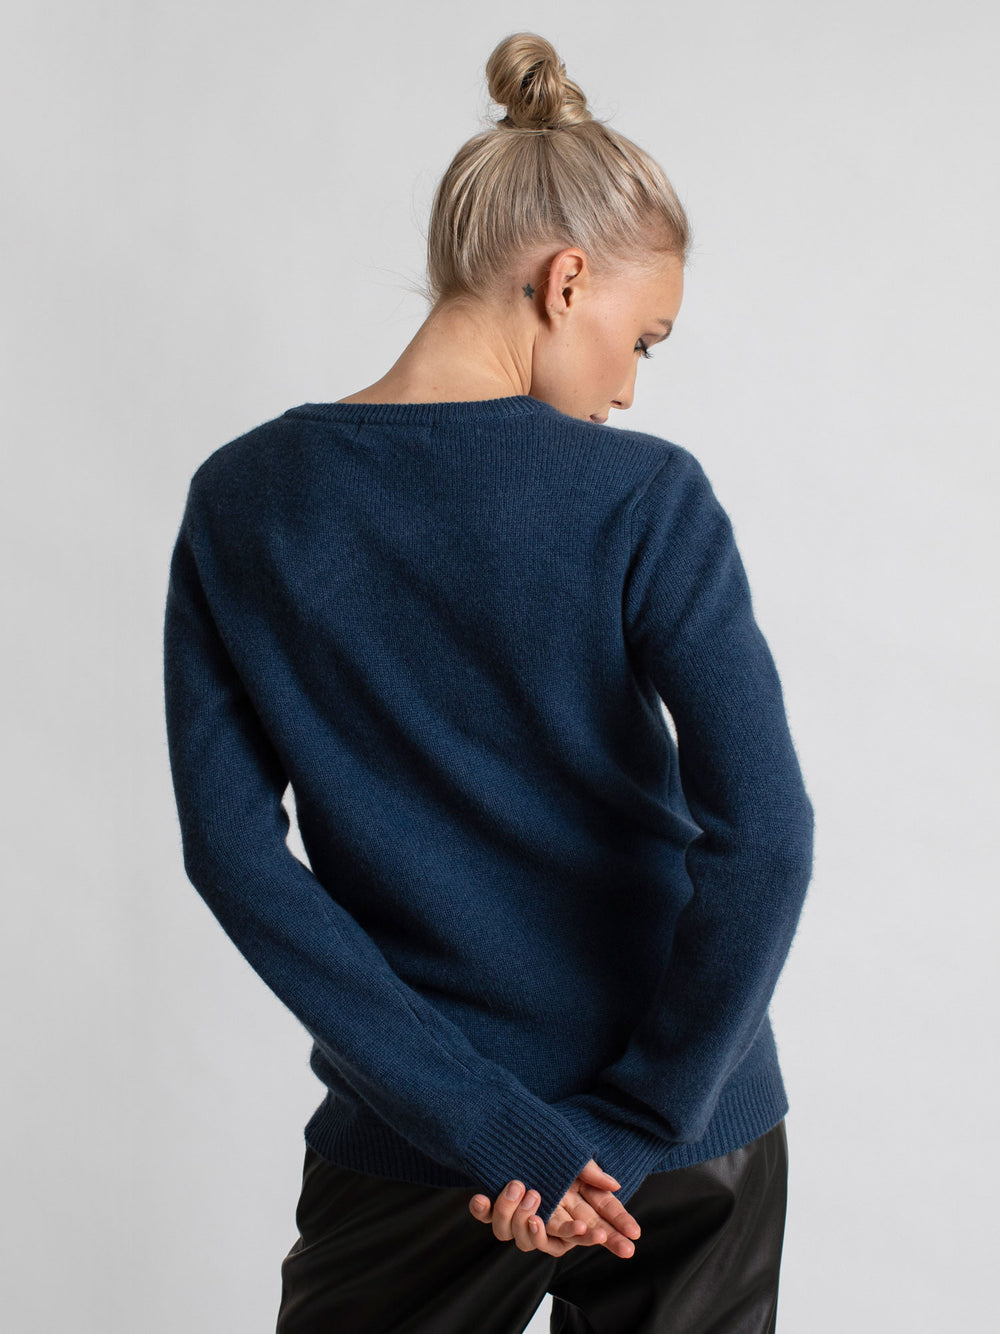 cashmere sweater luxury kashmina norwegian design sustainable fashion